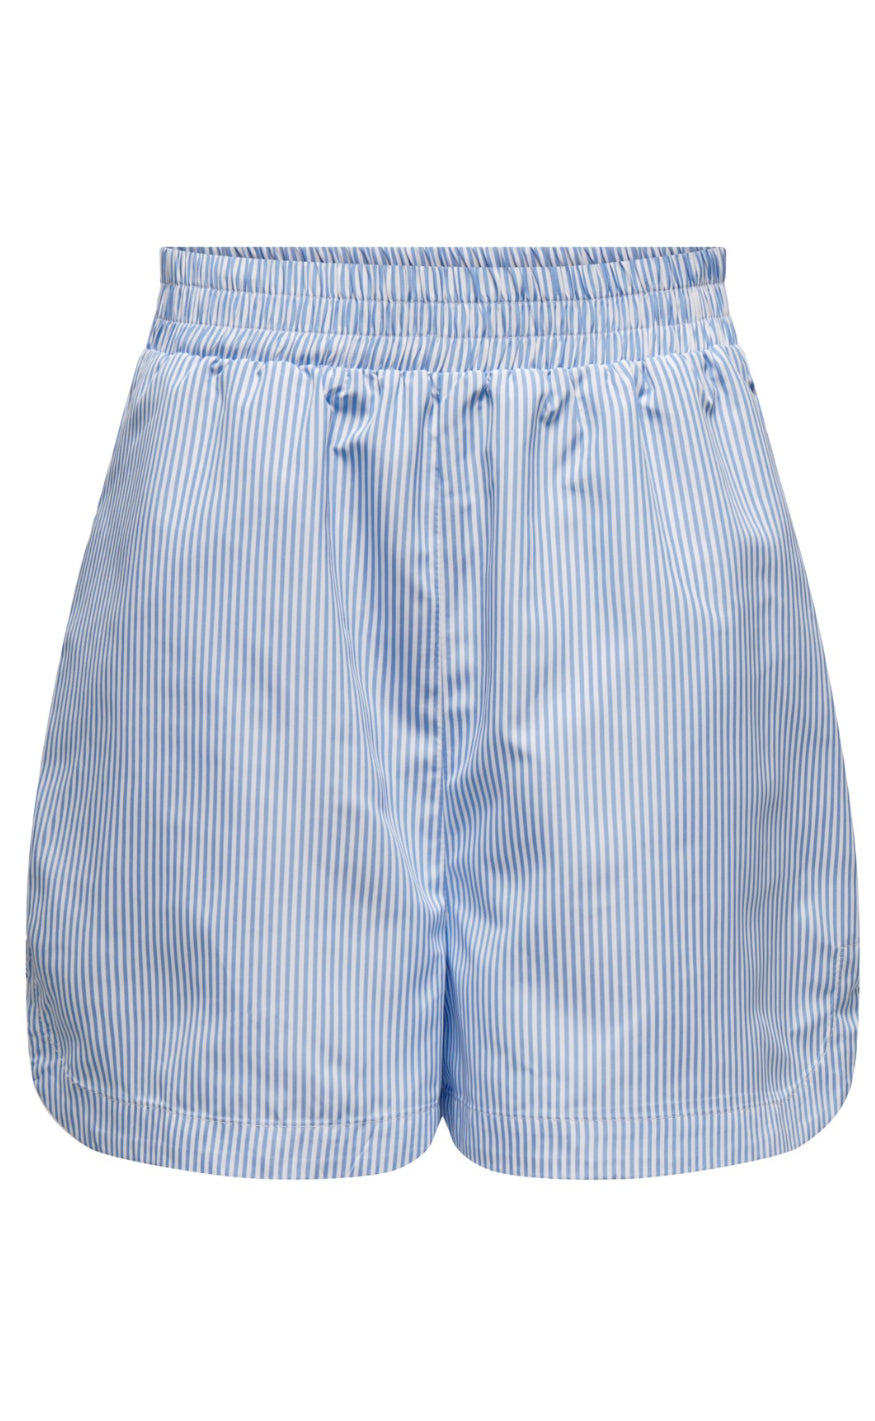 14: ONLY Shorts - Vinnie - Vista Blue